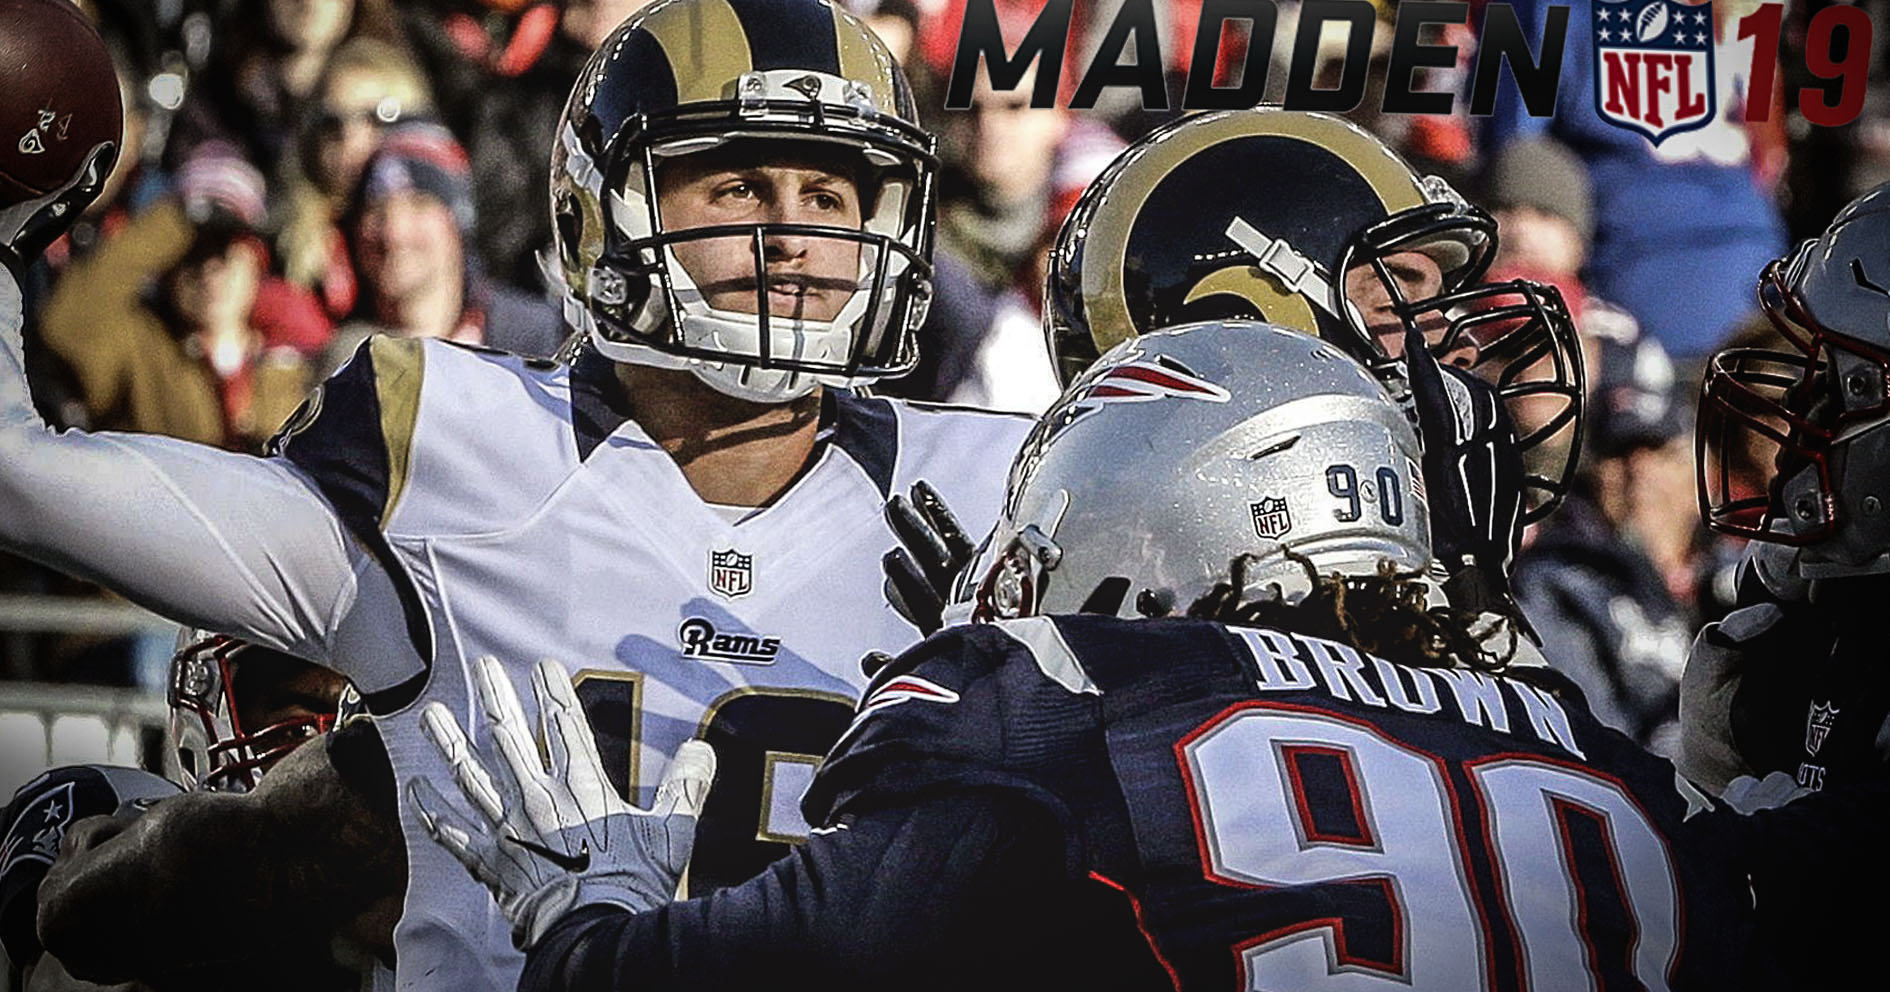 Rams ganará 30-27 el Súper Bowl, así lo predice Madden